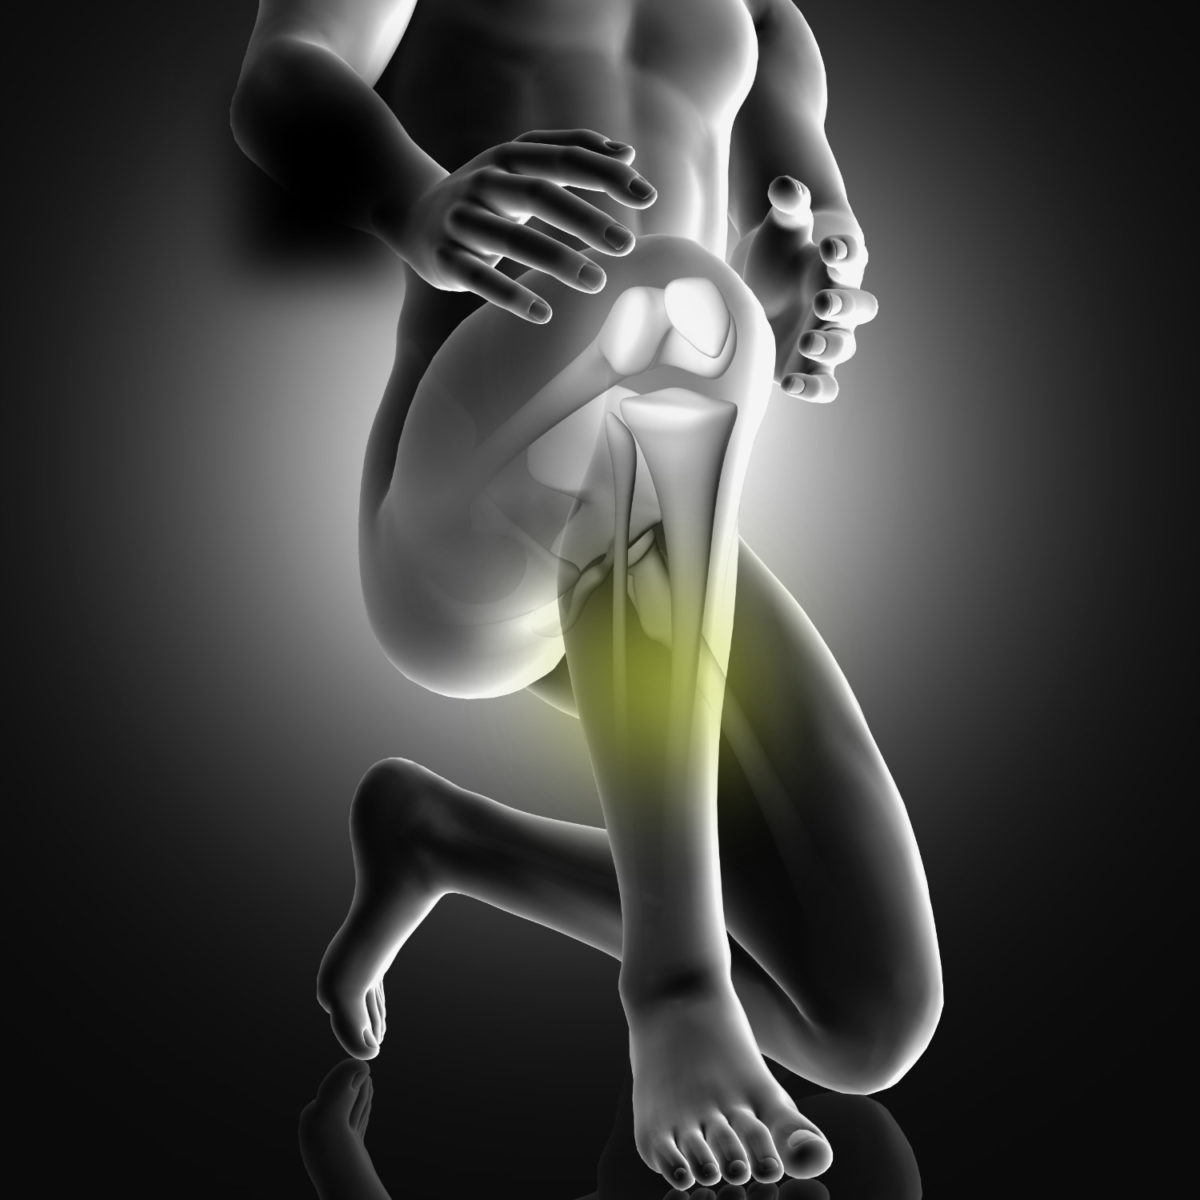 shin splints treatment in dallas and frisco